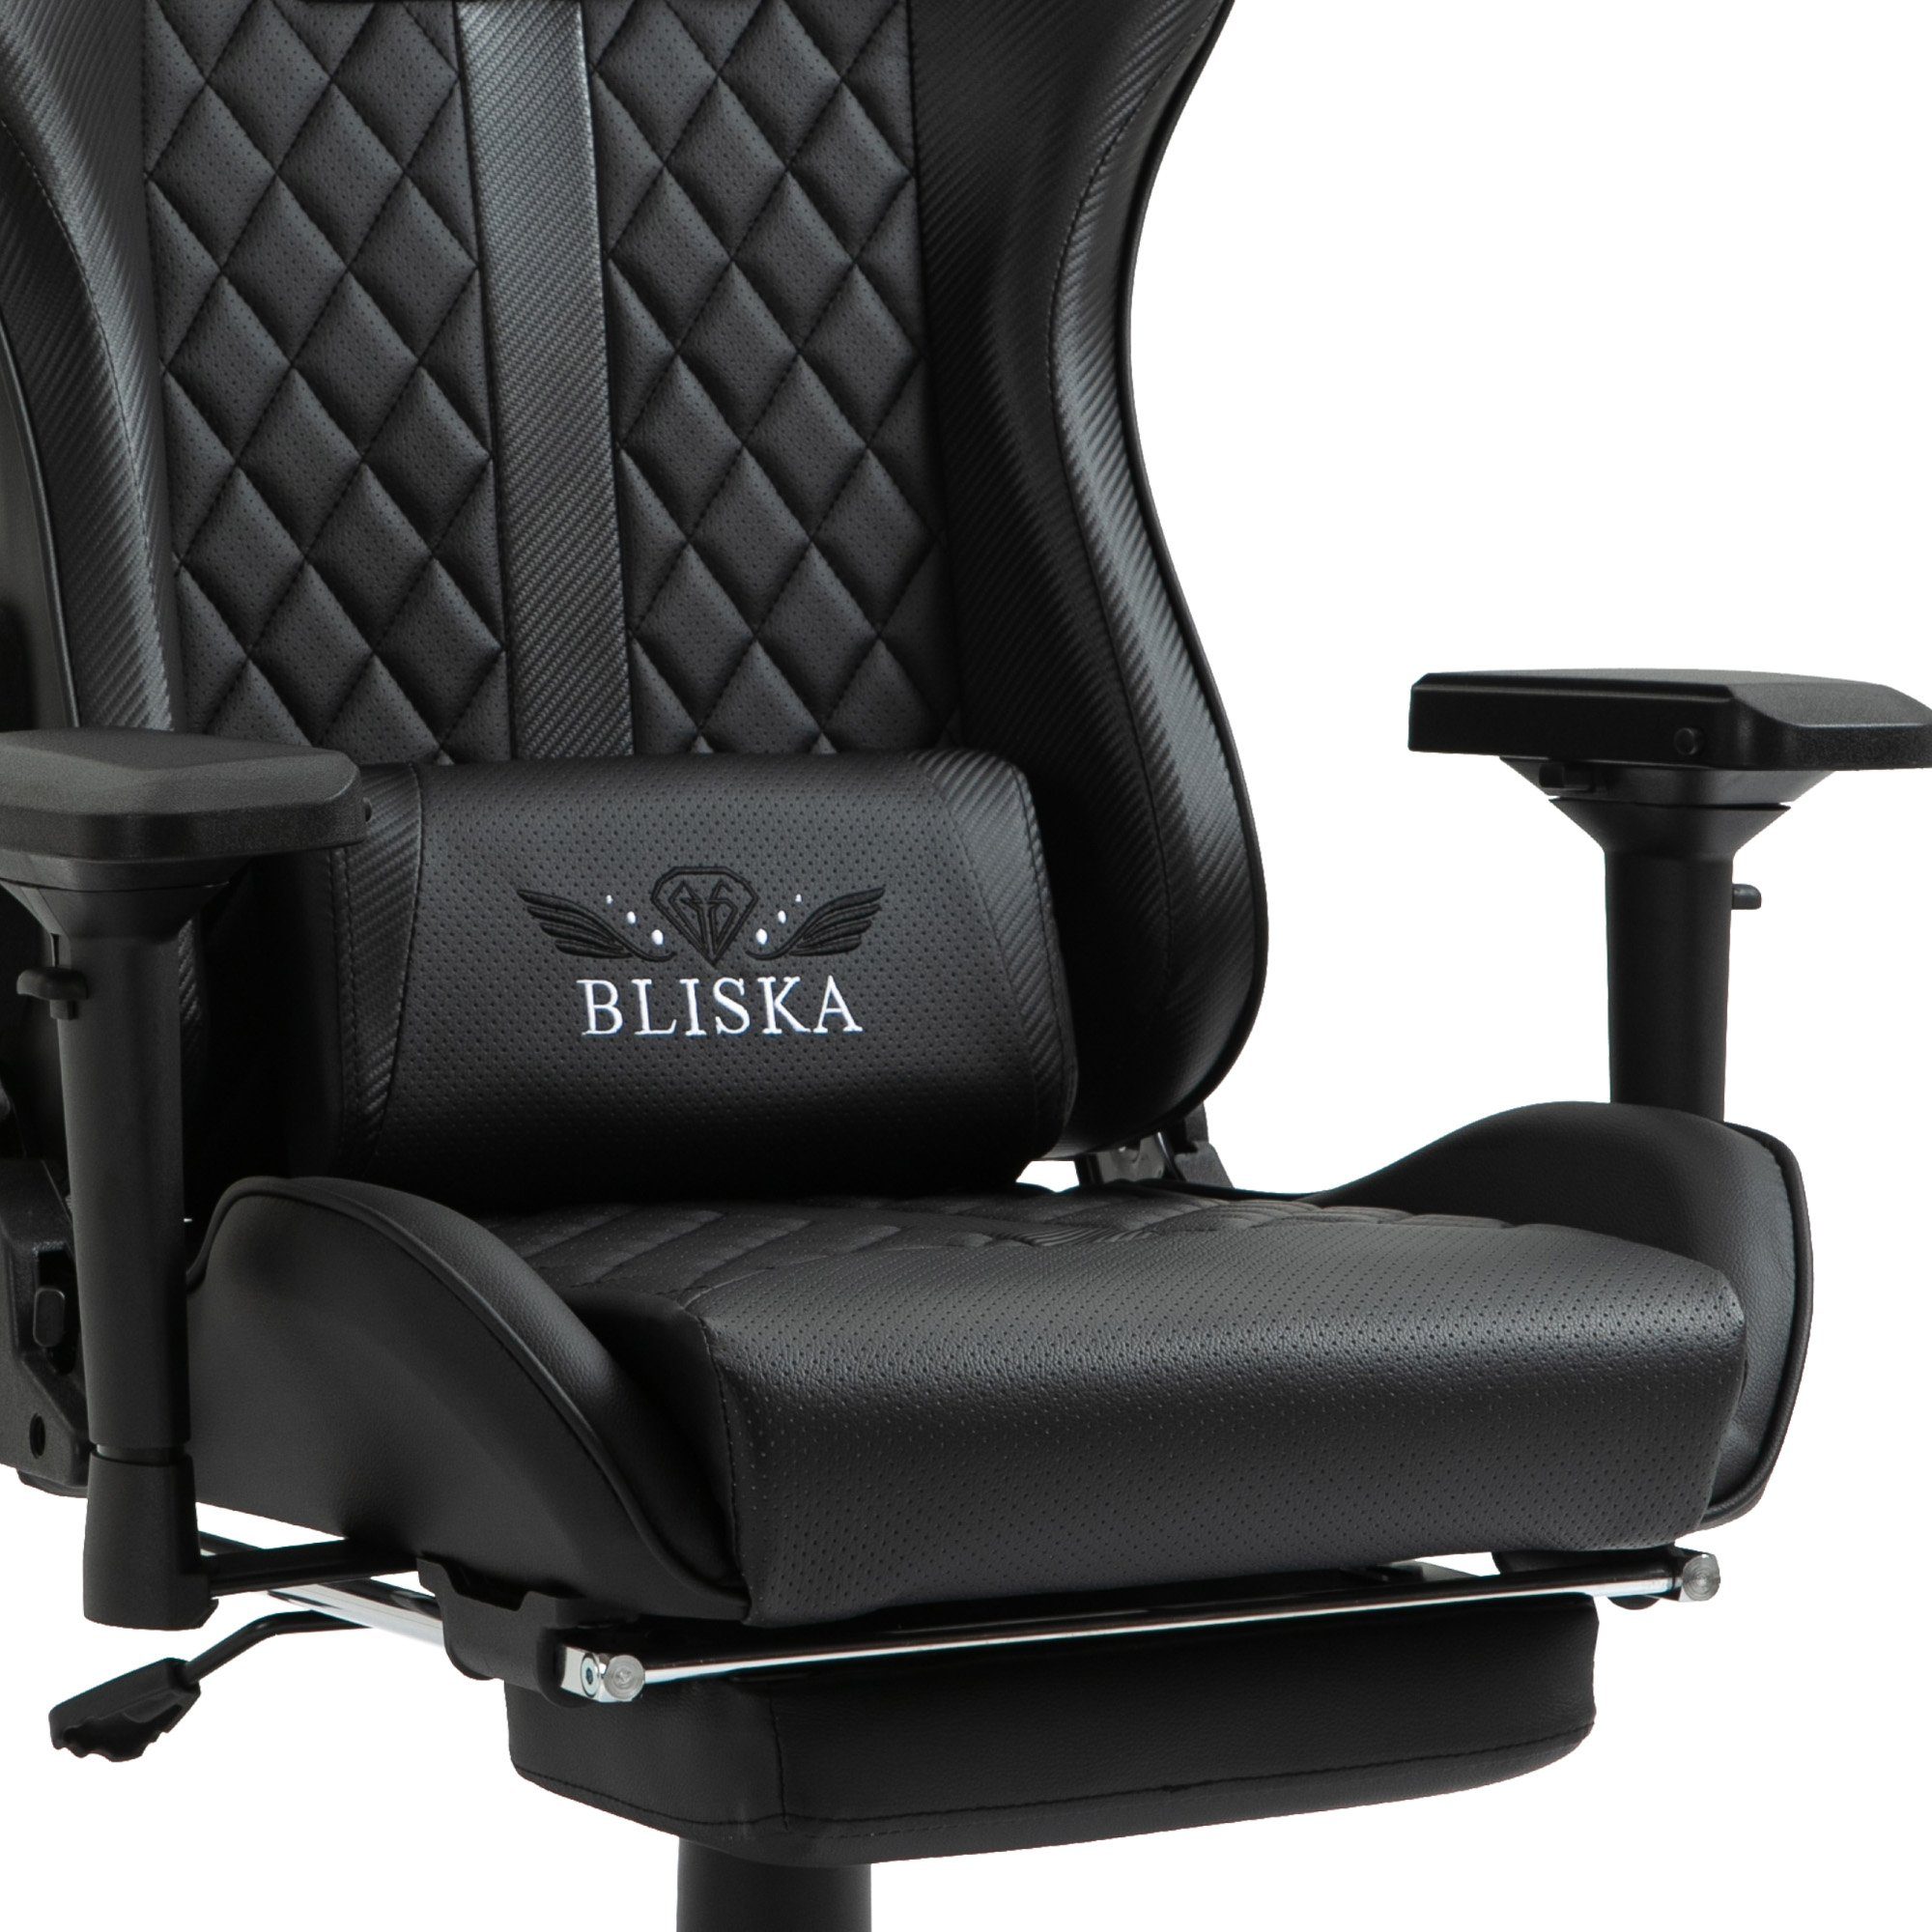 (einzeln), TRISENS Bürostuhl Schwarz flexiblen im Chefsessel Racing-Design Stuhl mit Gaming Armlehnen Thanos